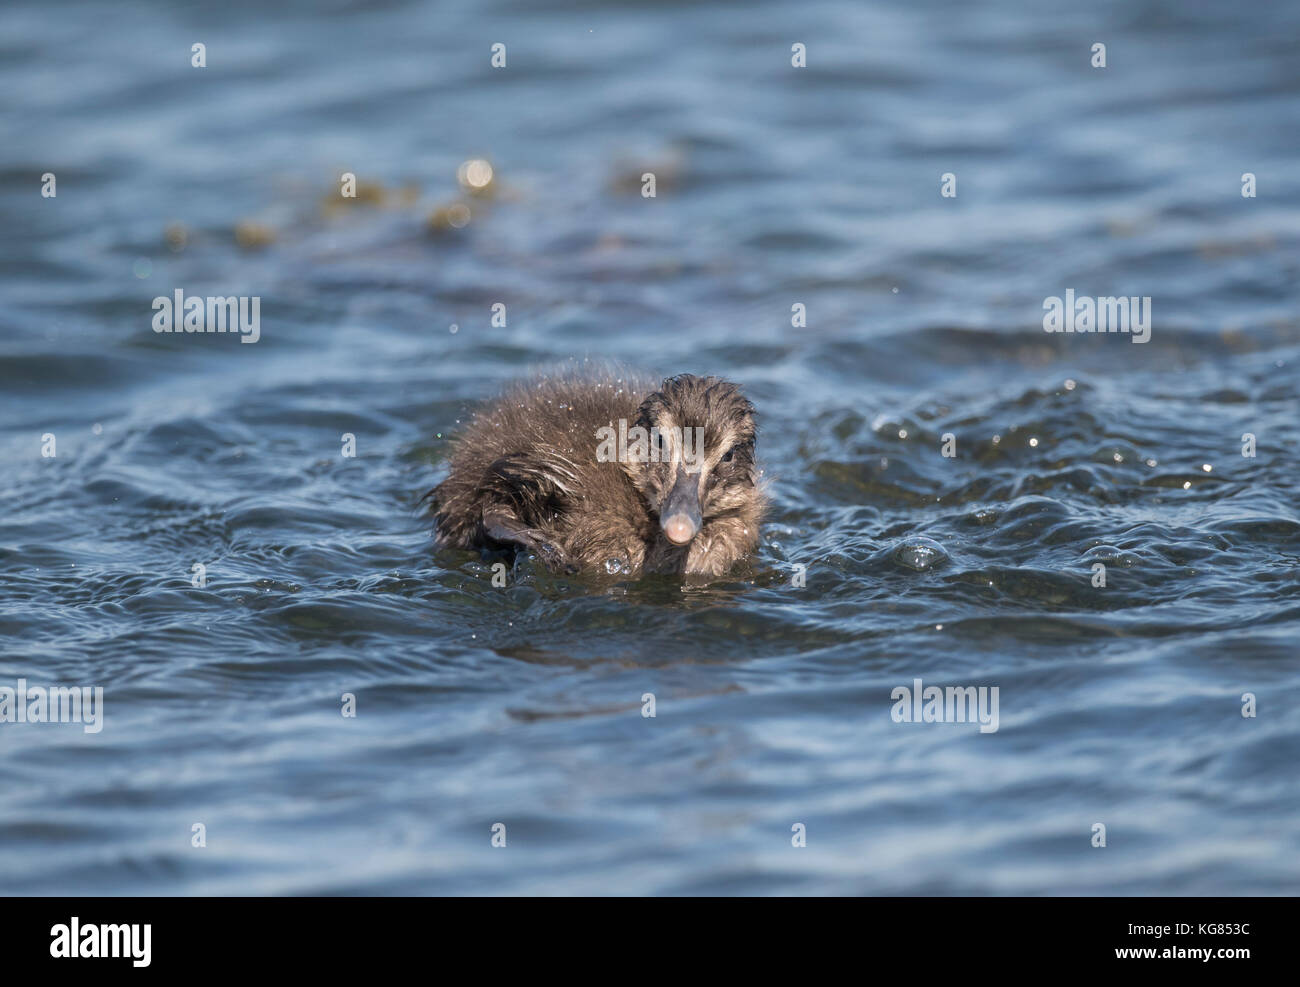 Eider duck, juvenile, swimming in the sea Stock Photo